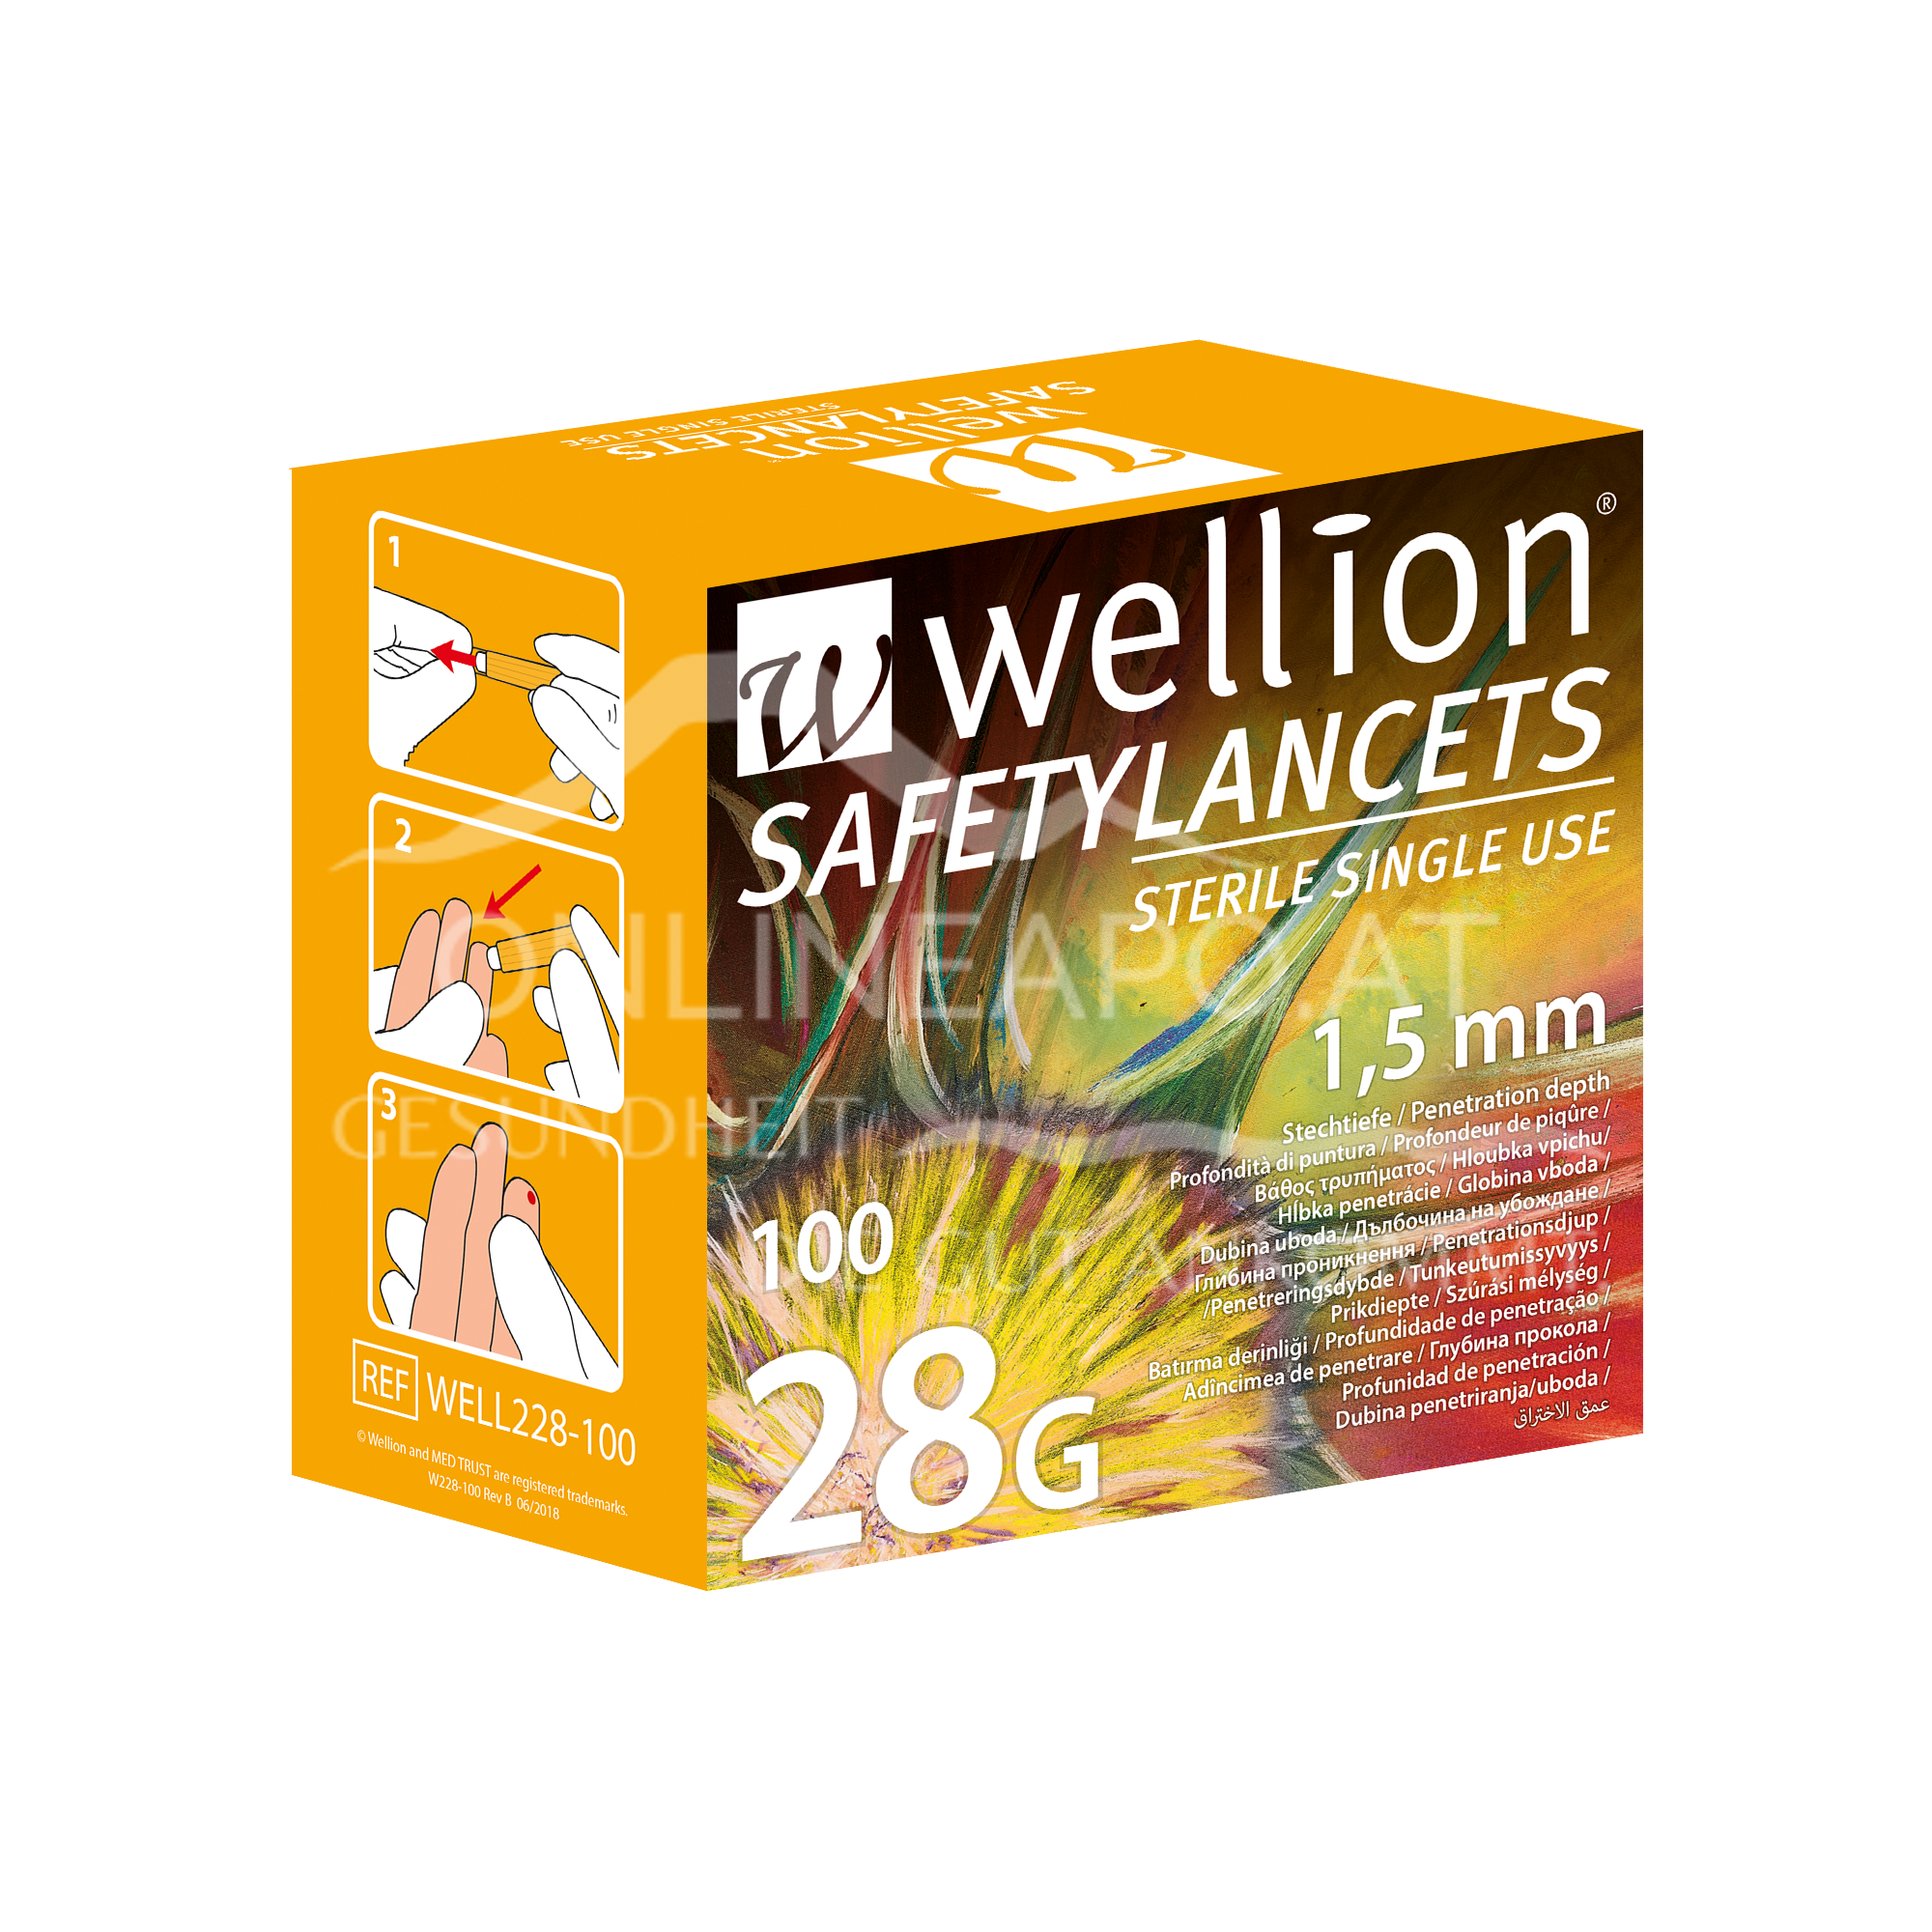 WELL228-100 Wellion Safety Lanzetten 28G - 100 Stk